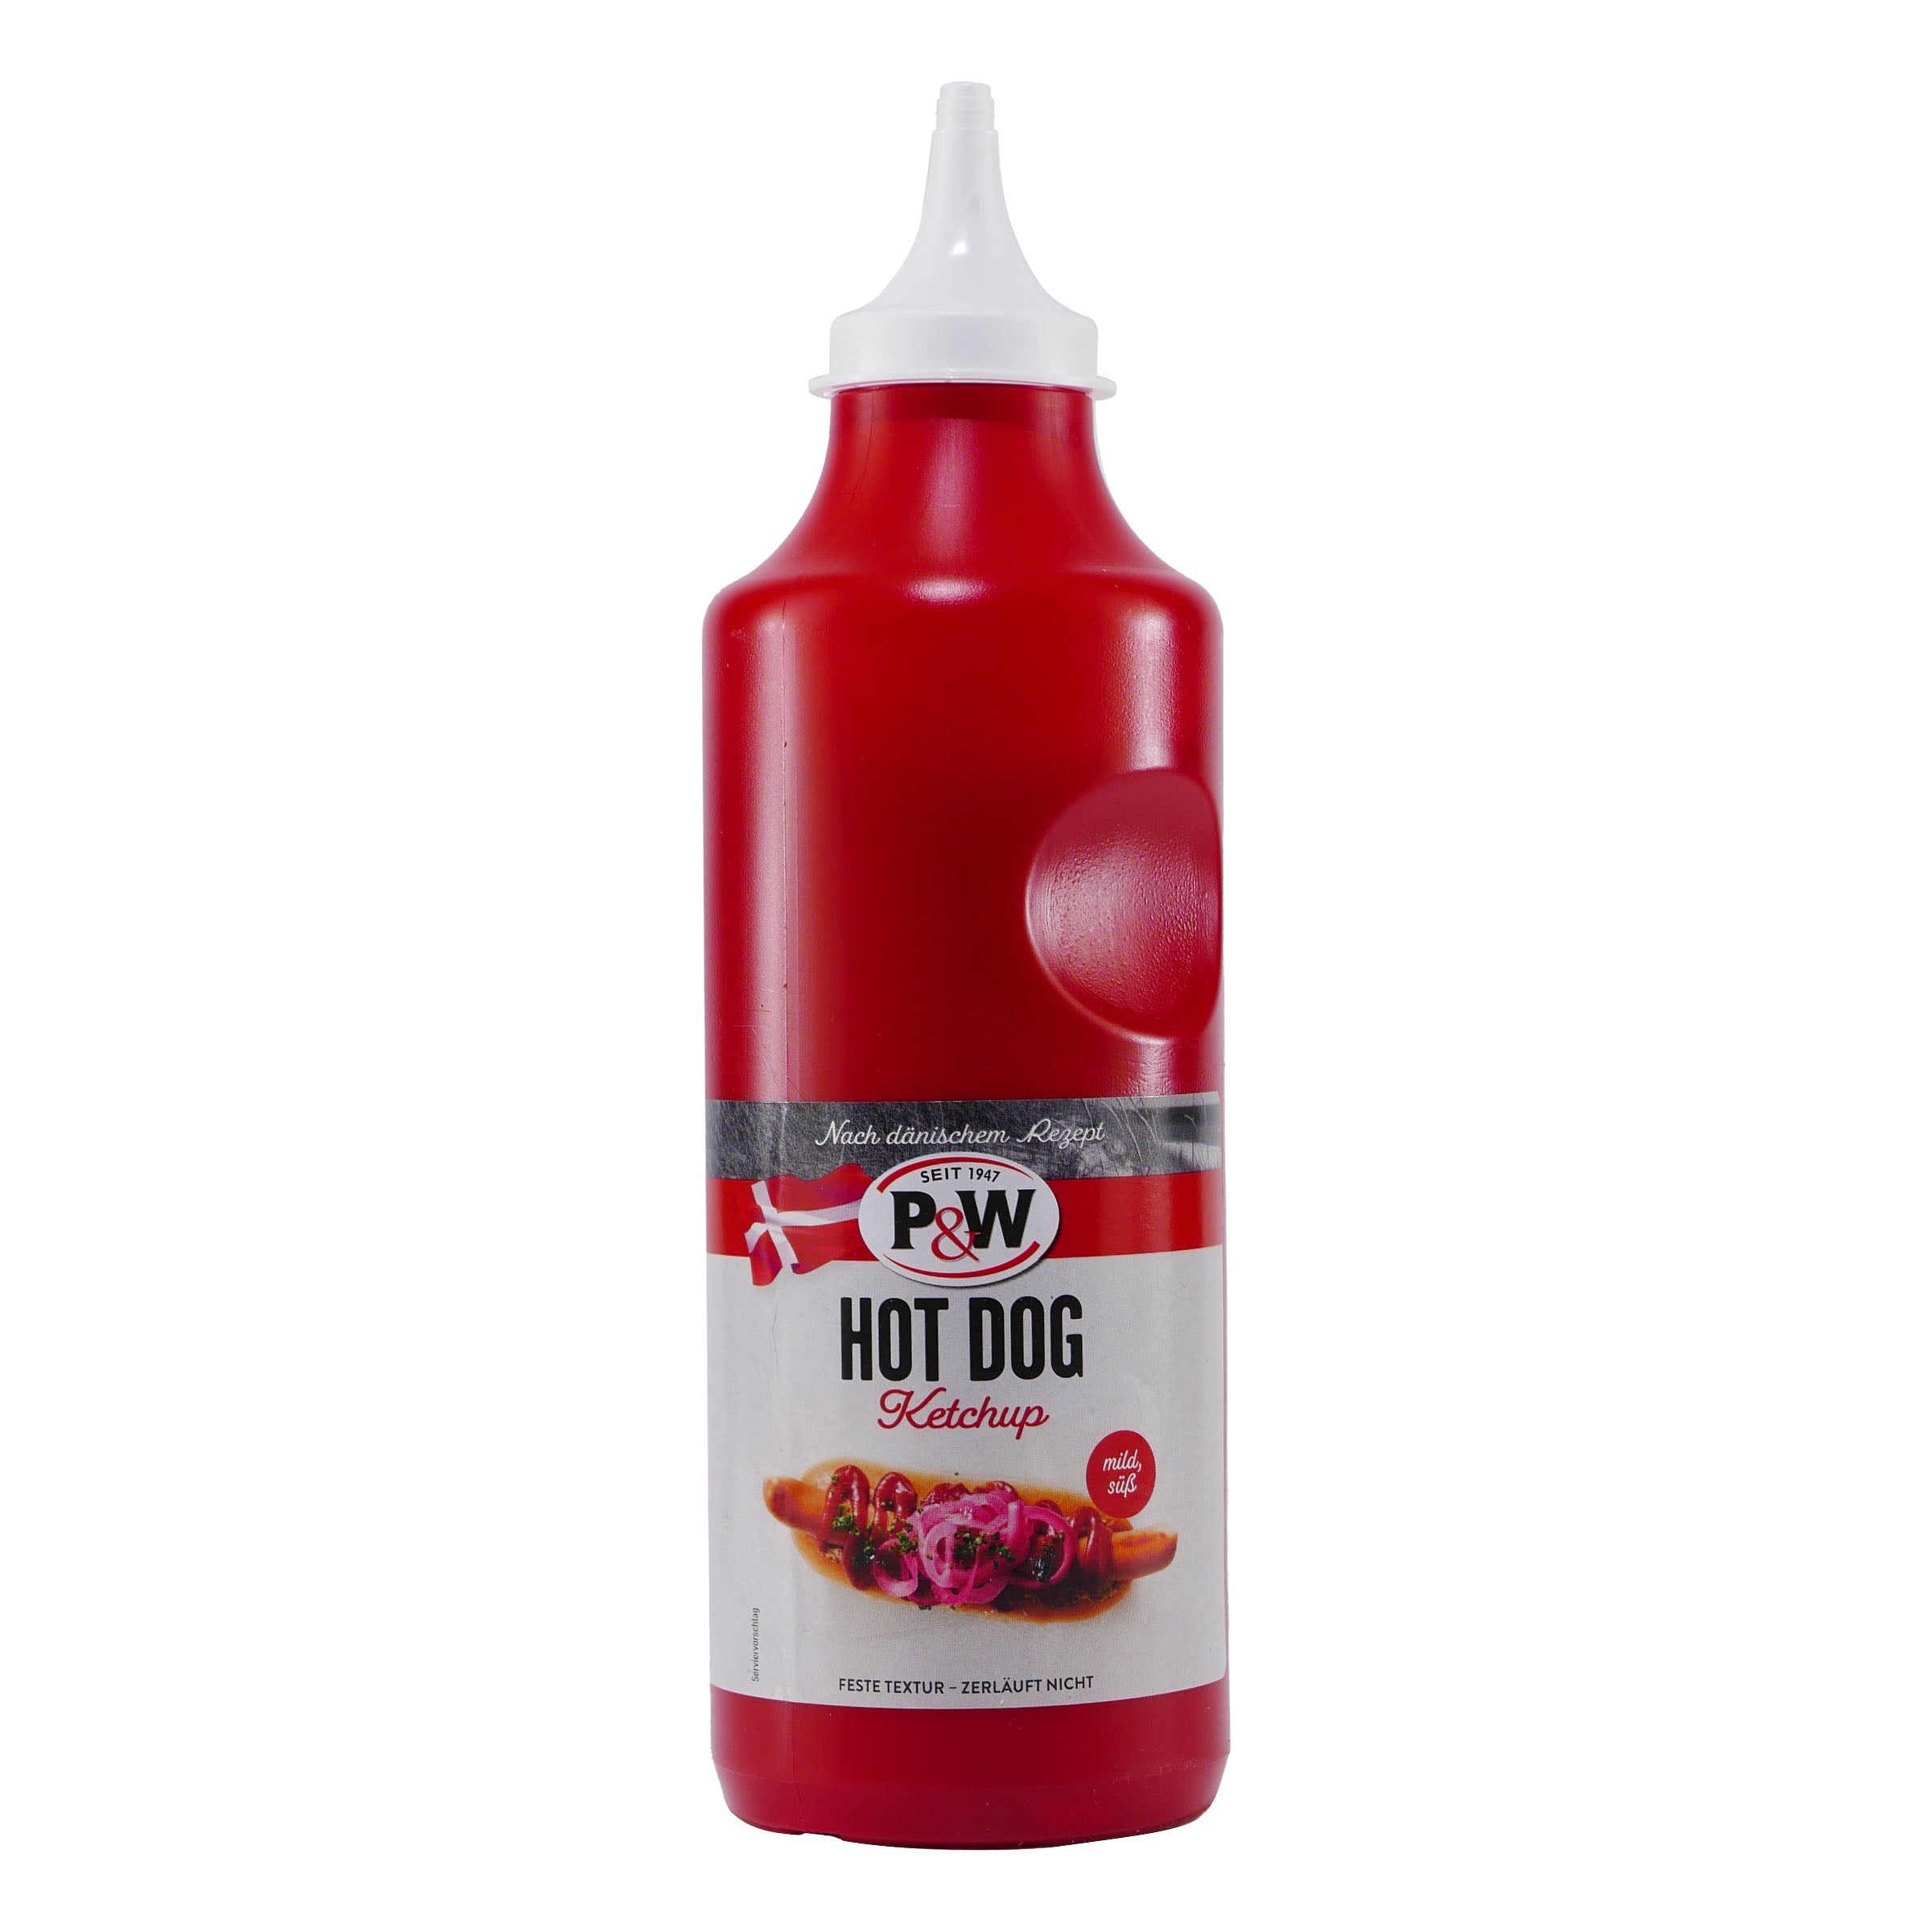 P&W Hot Dog Ketchup (6 x 900g)